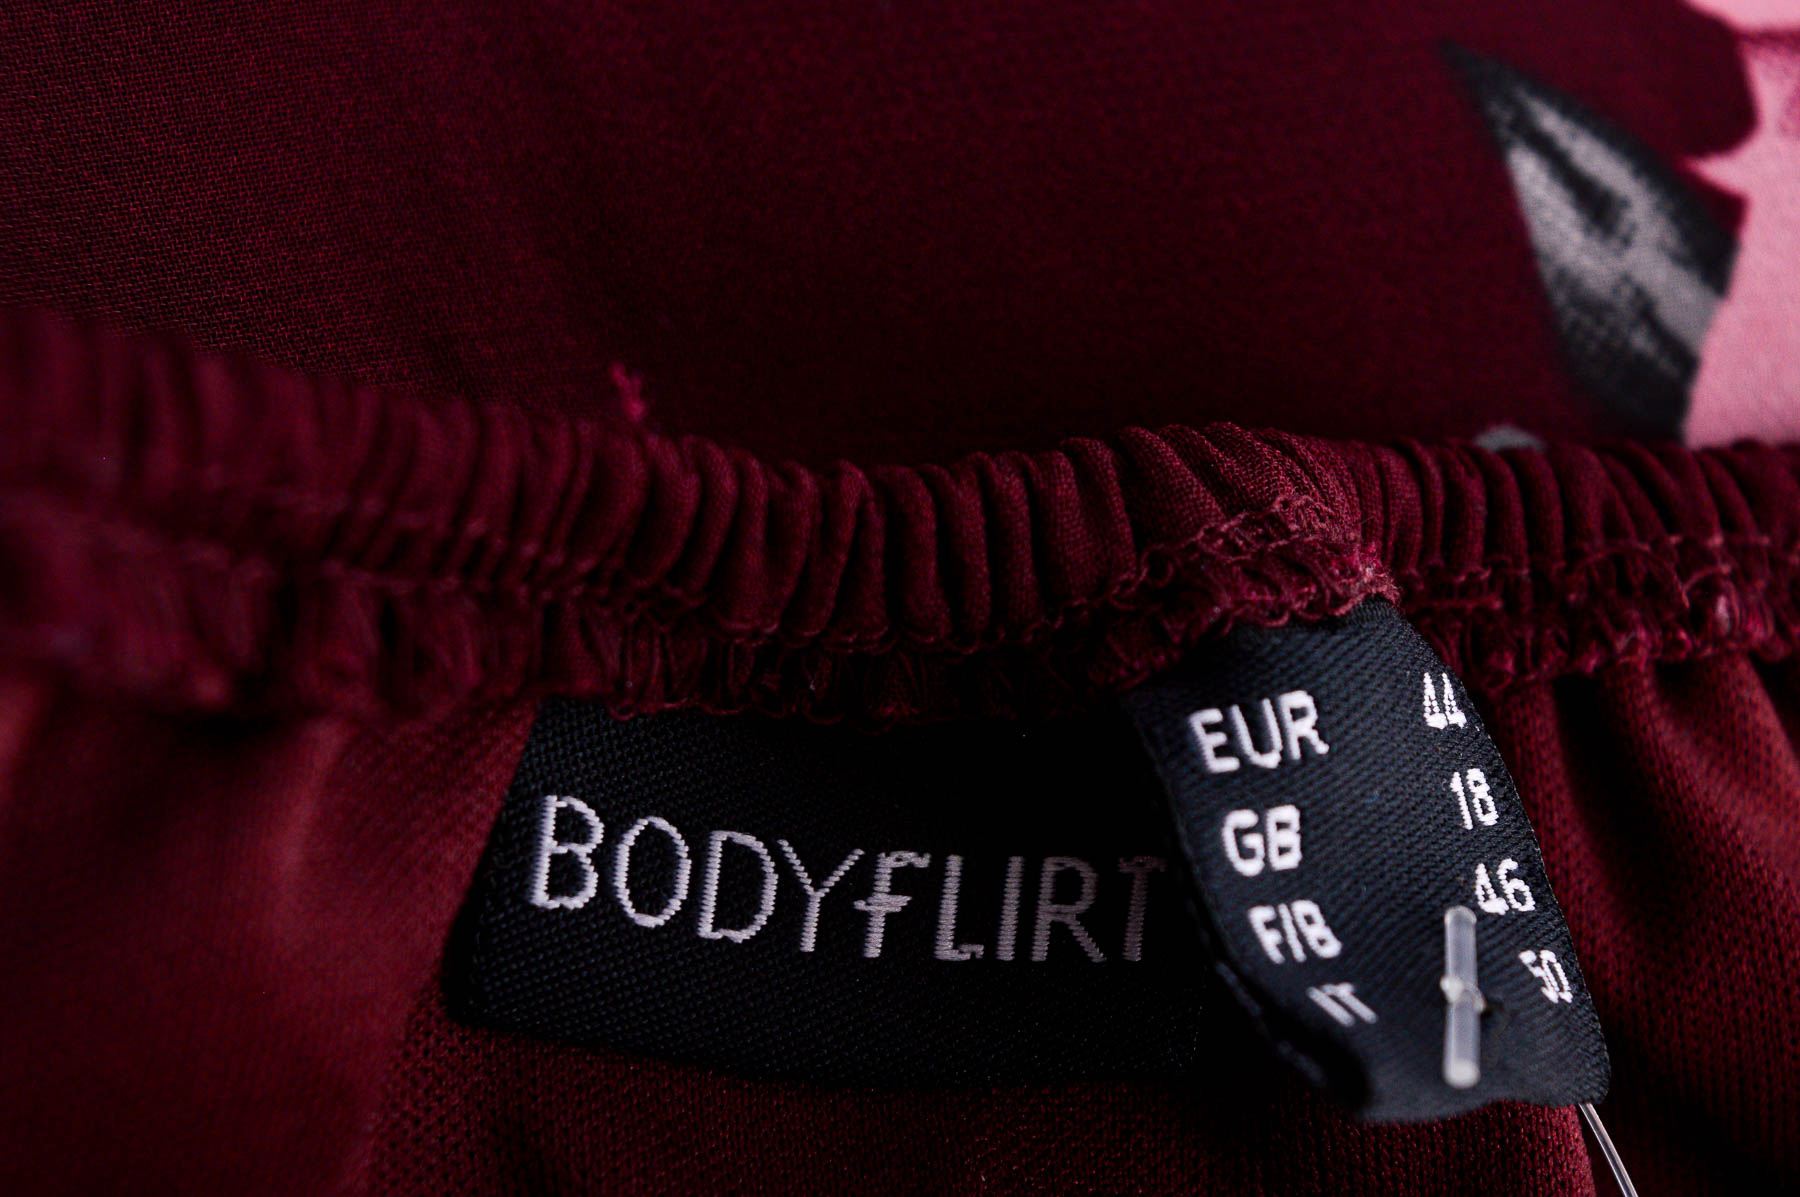 Women's shirt - BODYFLIRT - 2